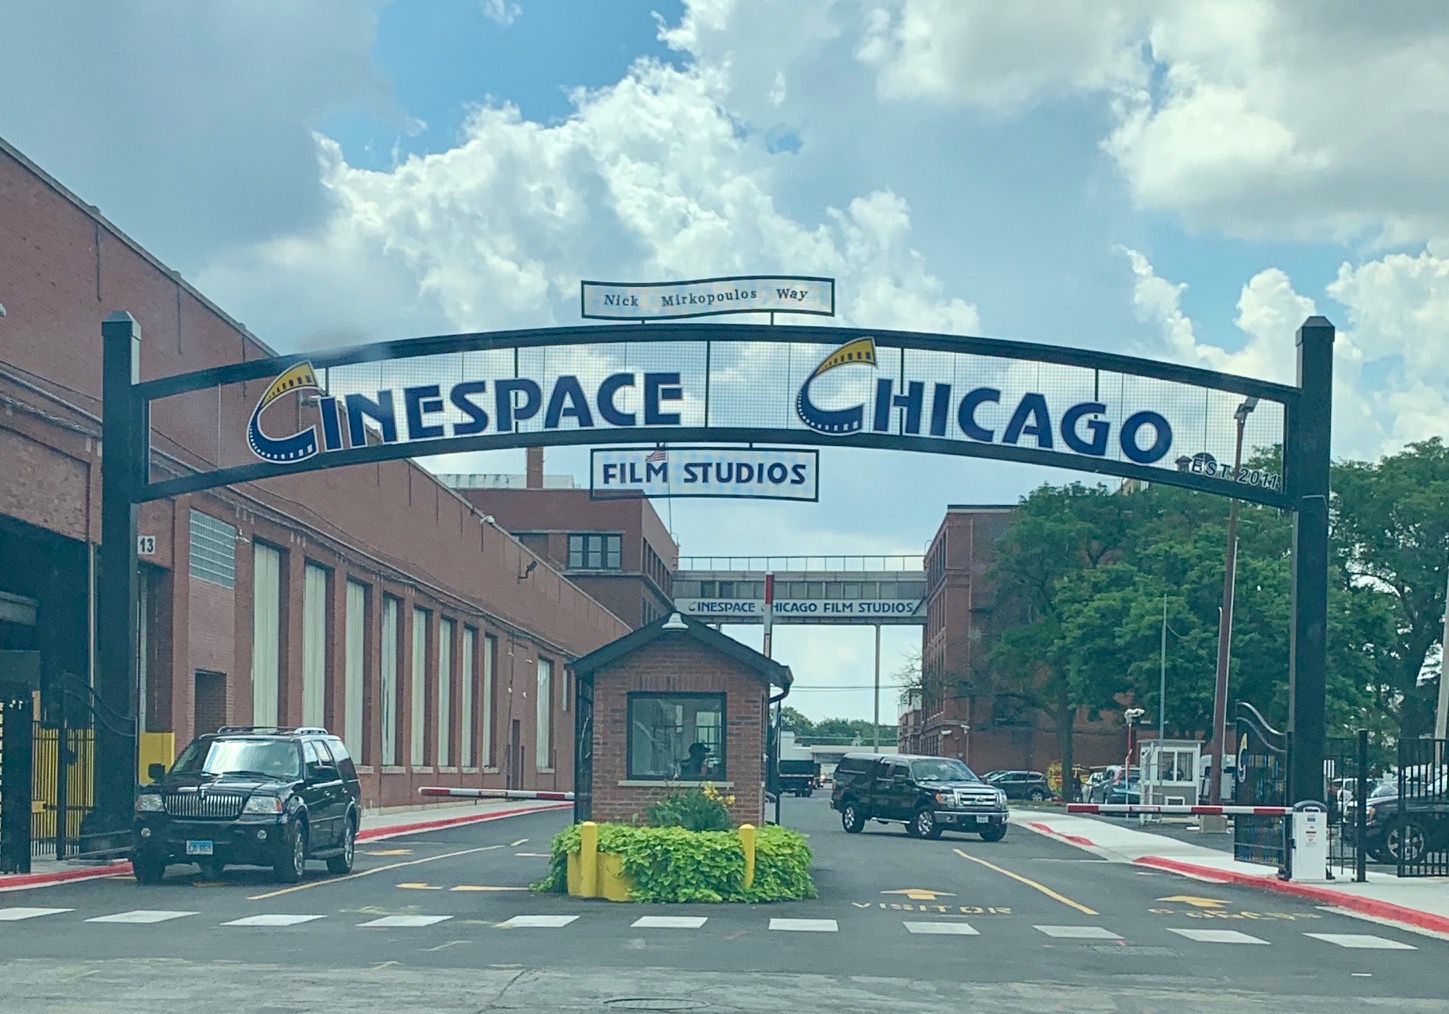 Cinespace Chicago Film Studios 2 Pilots for Filming NBC's